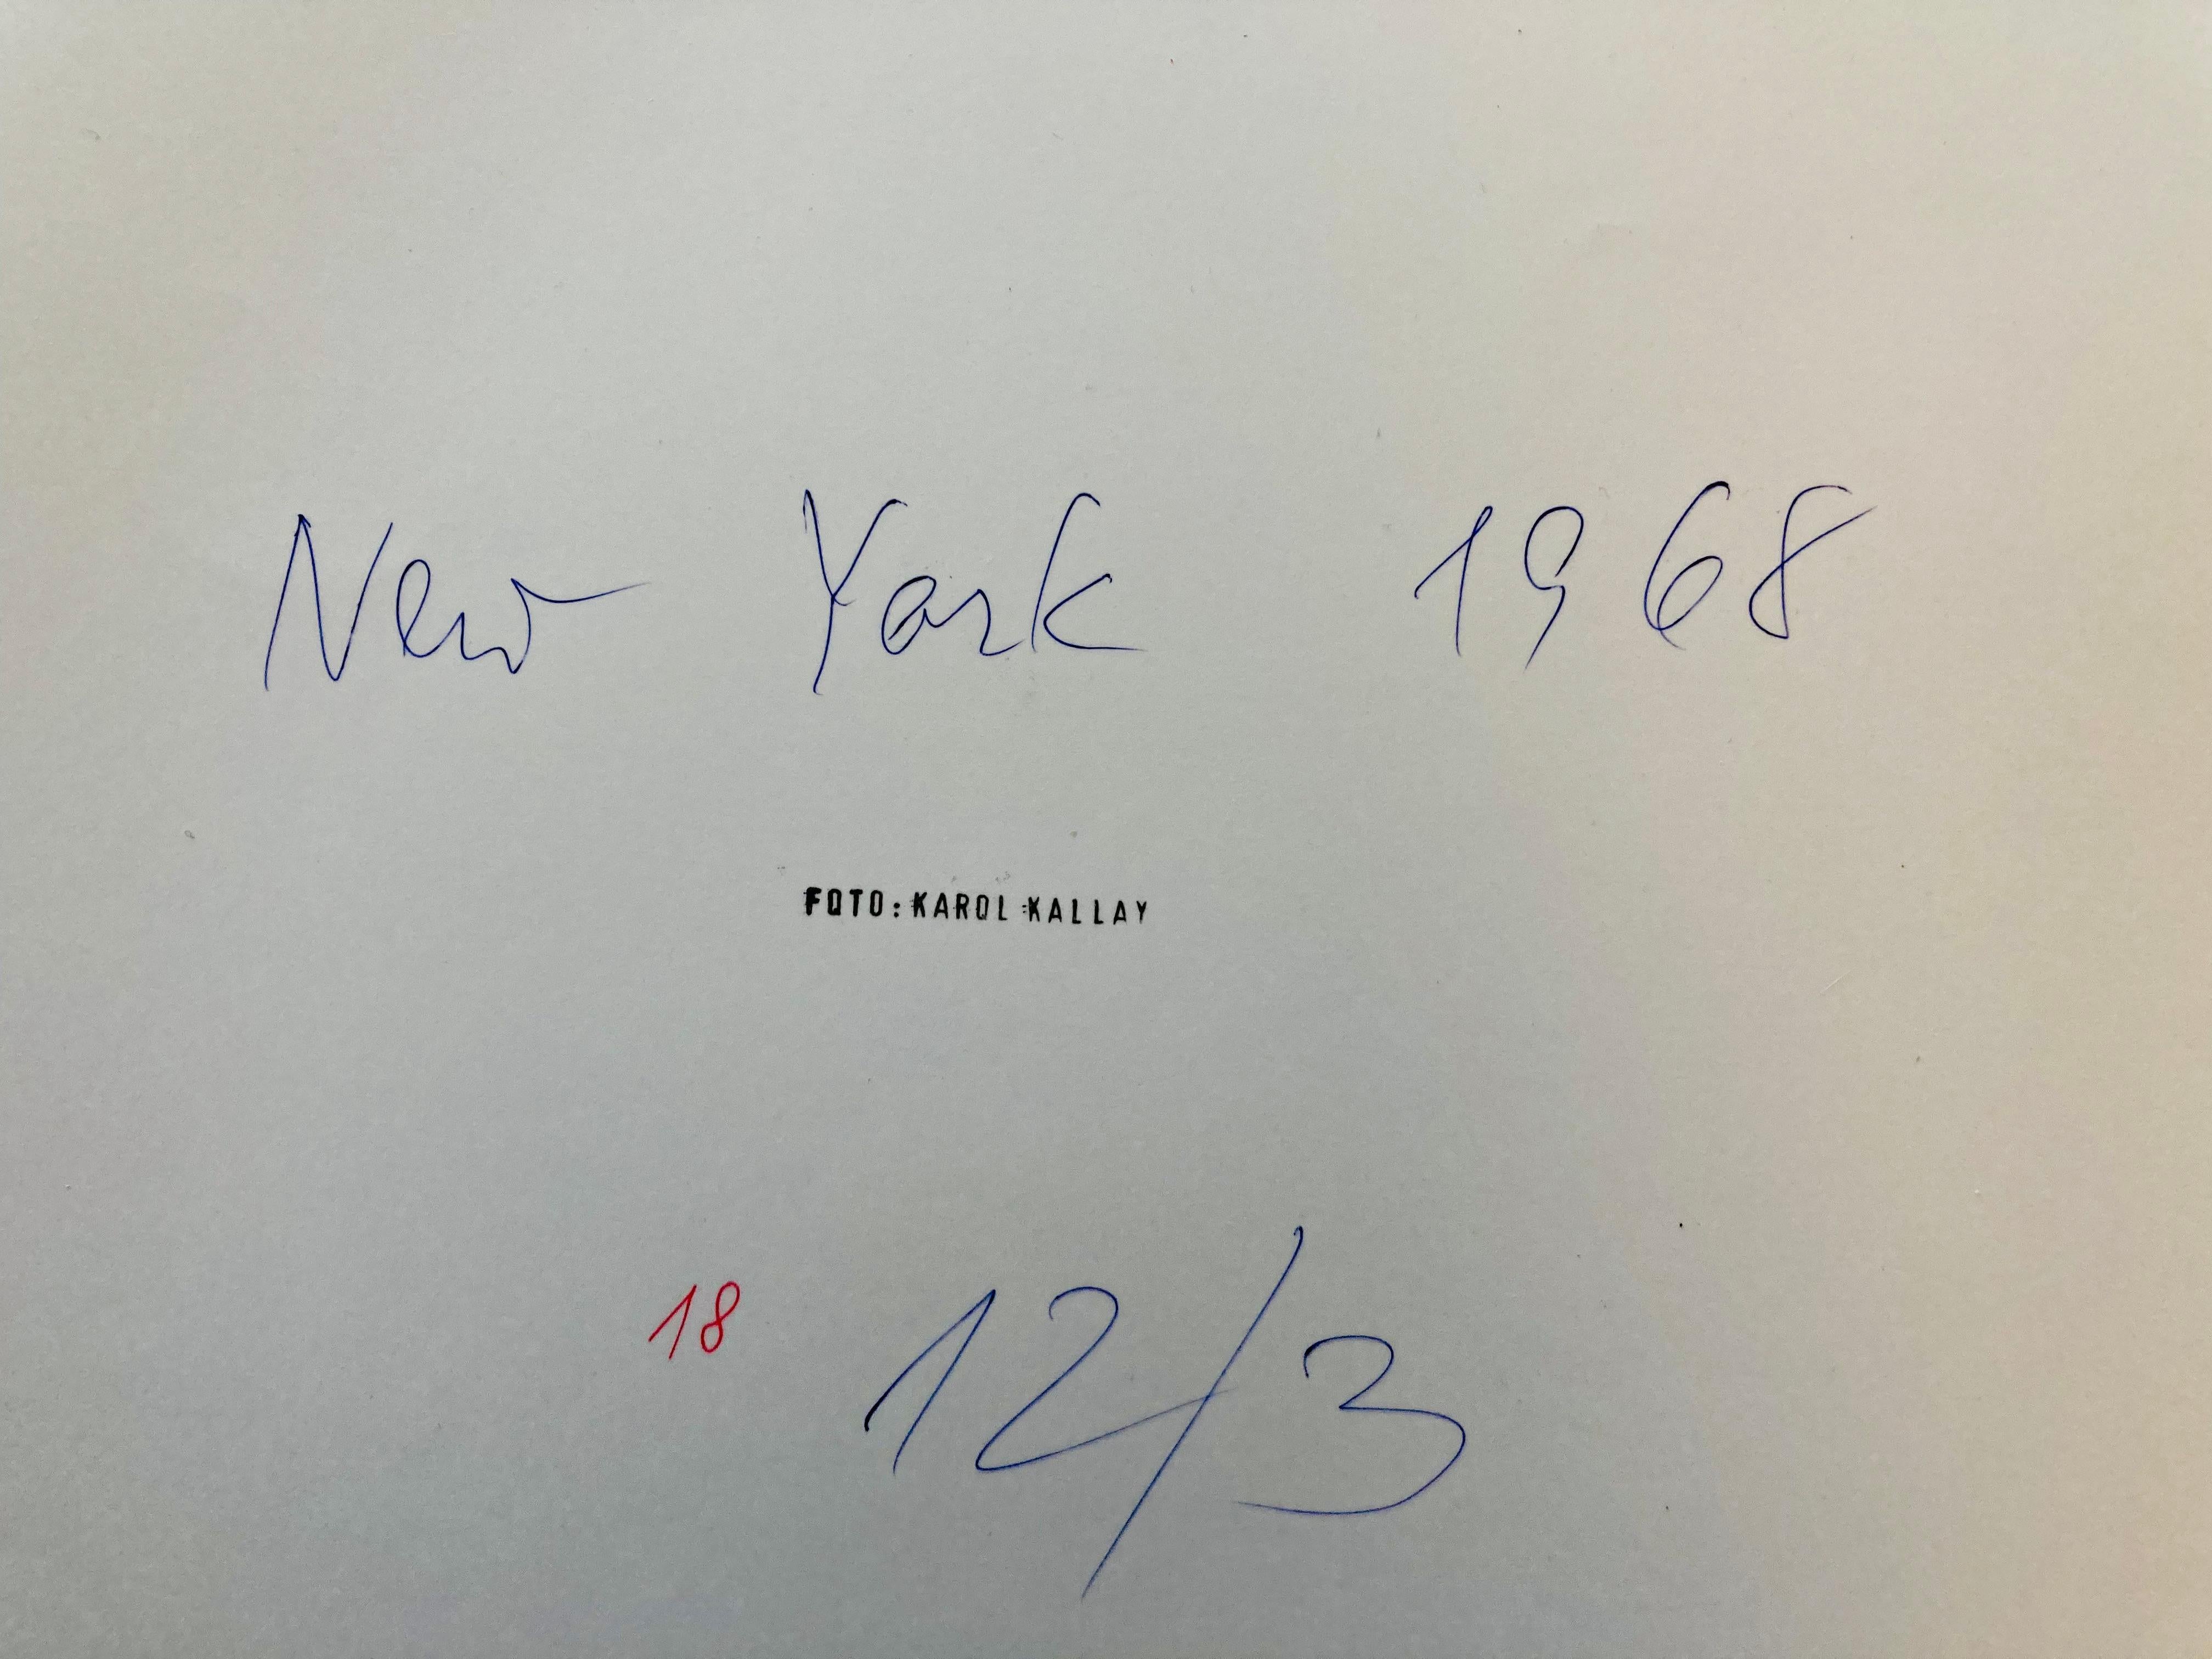 La photographie sur papier photo est tamponnée au dos par l'auteur, un certificat d'origine sera ajouté. Fait à NY en 1968 pour un livre sur NY.